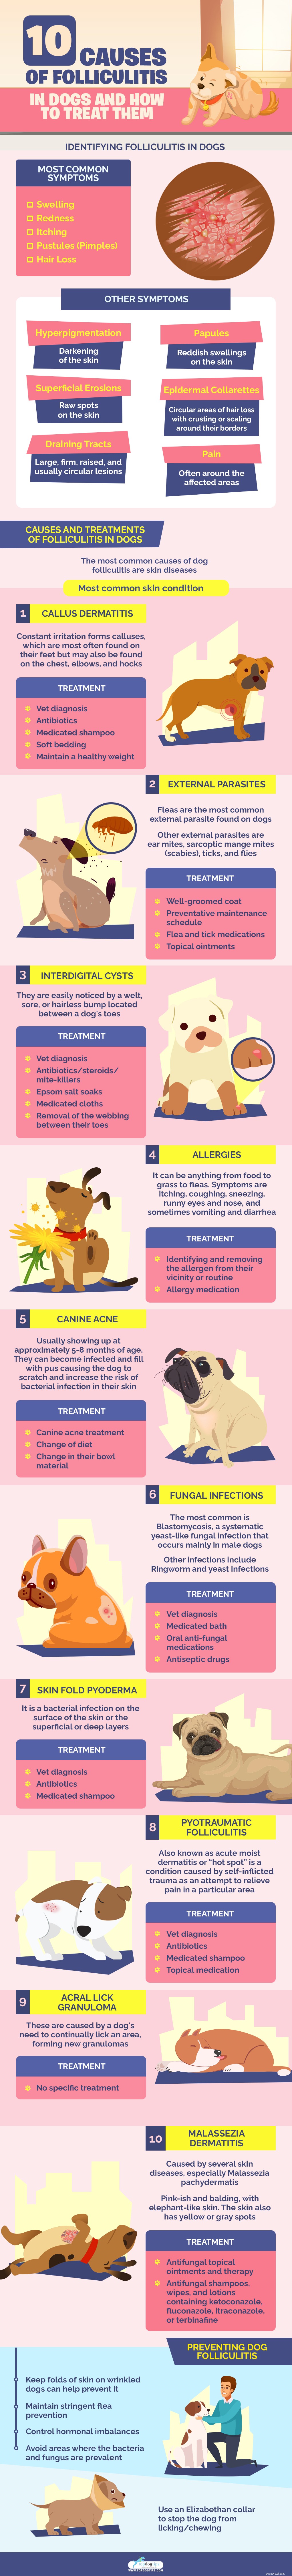 Folikulitida u psů:10 příčin a jak je léčit